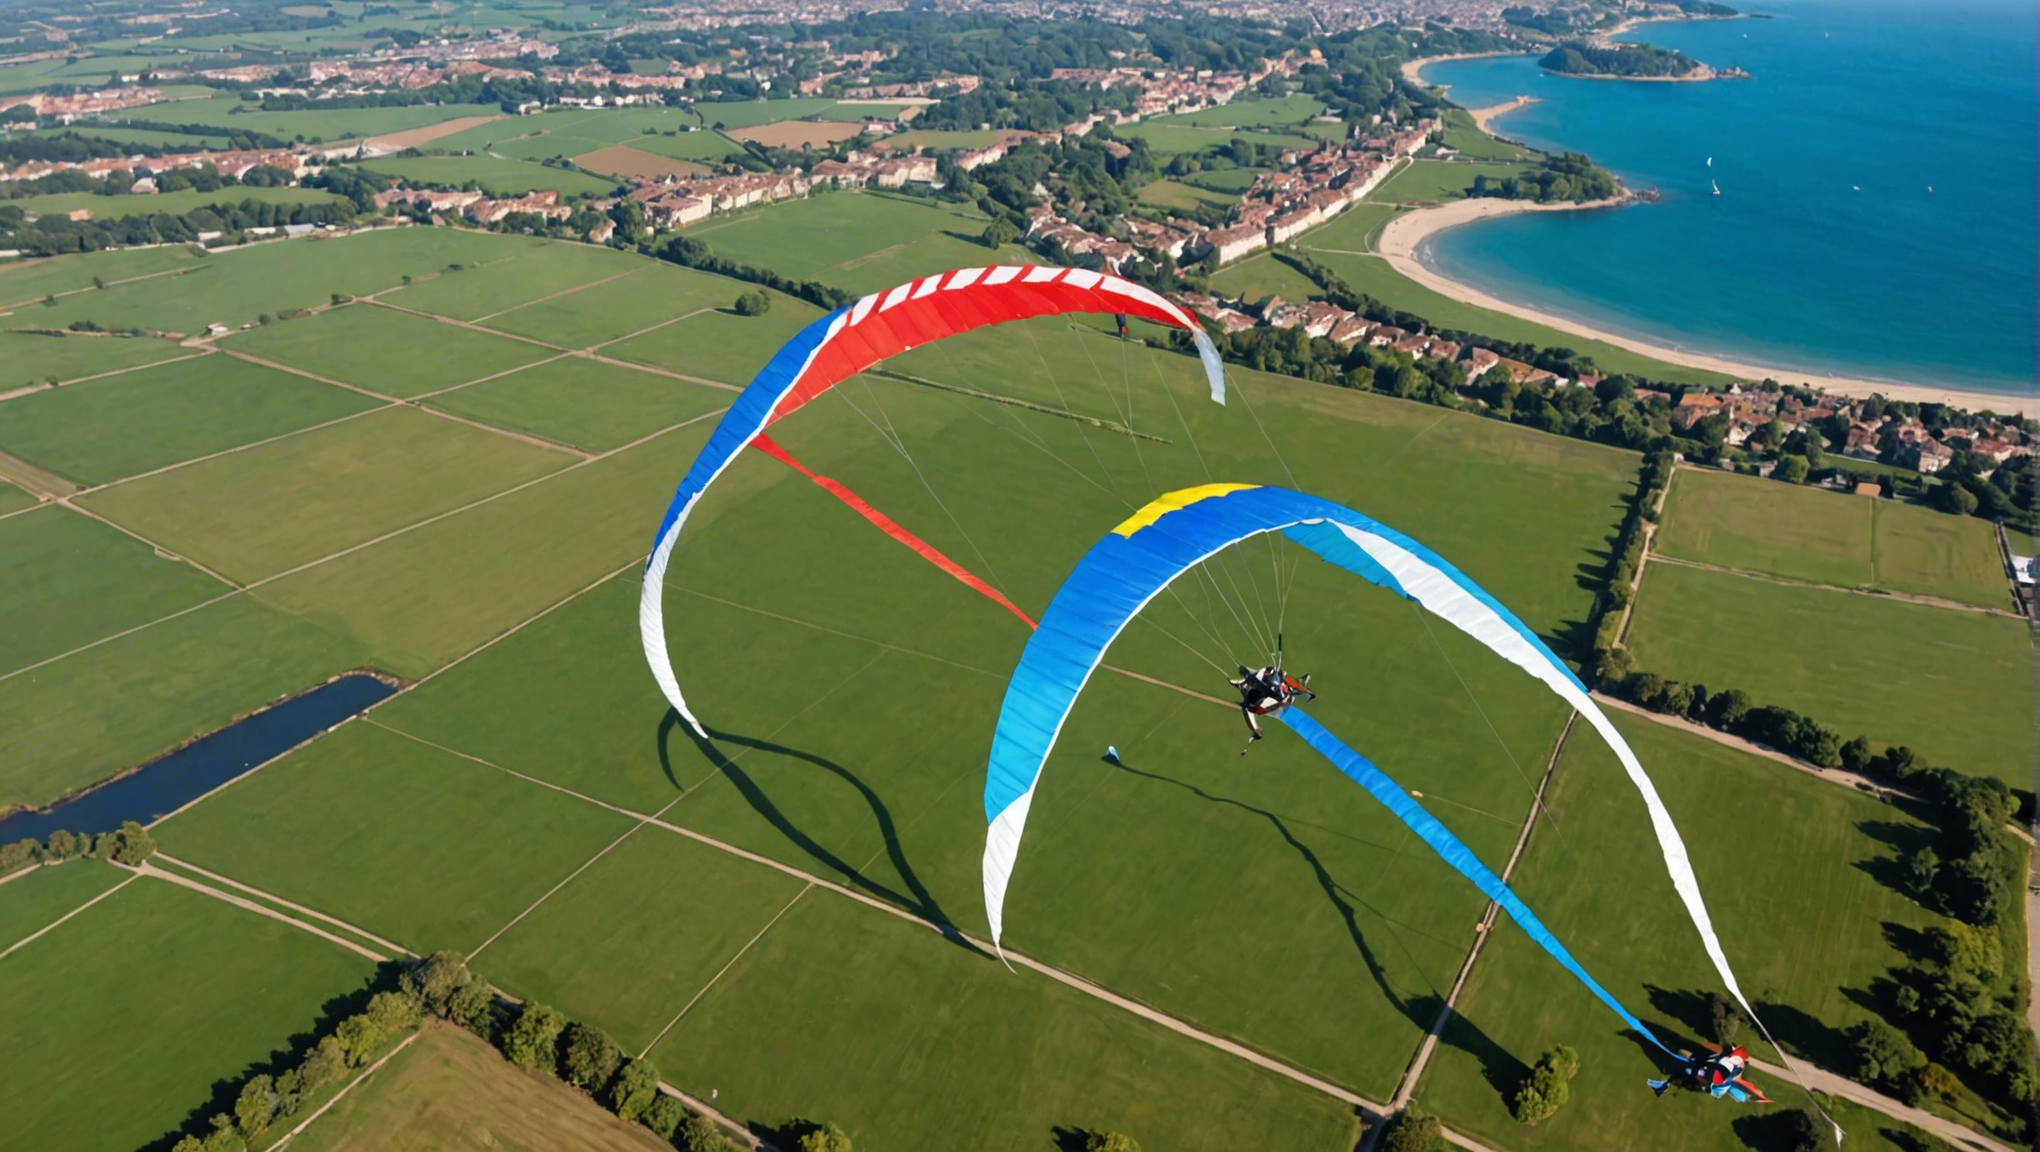 découvrez le guide ultime du jeu aérien avec nos kites. laissez-vous emporter dans cet univers passionnant et apprenez-en plus dès maintenant.